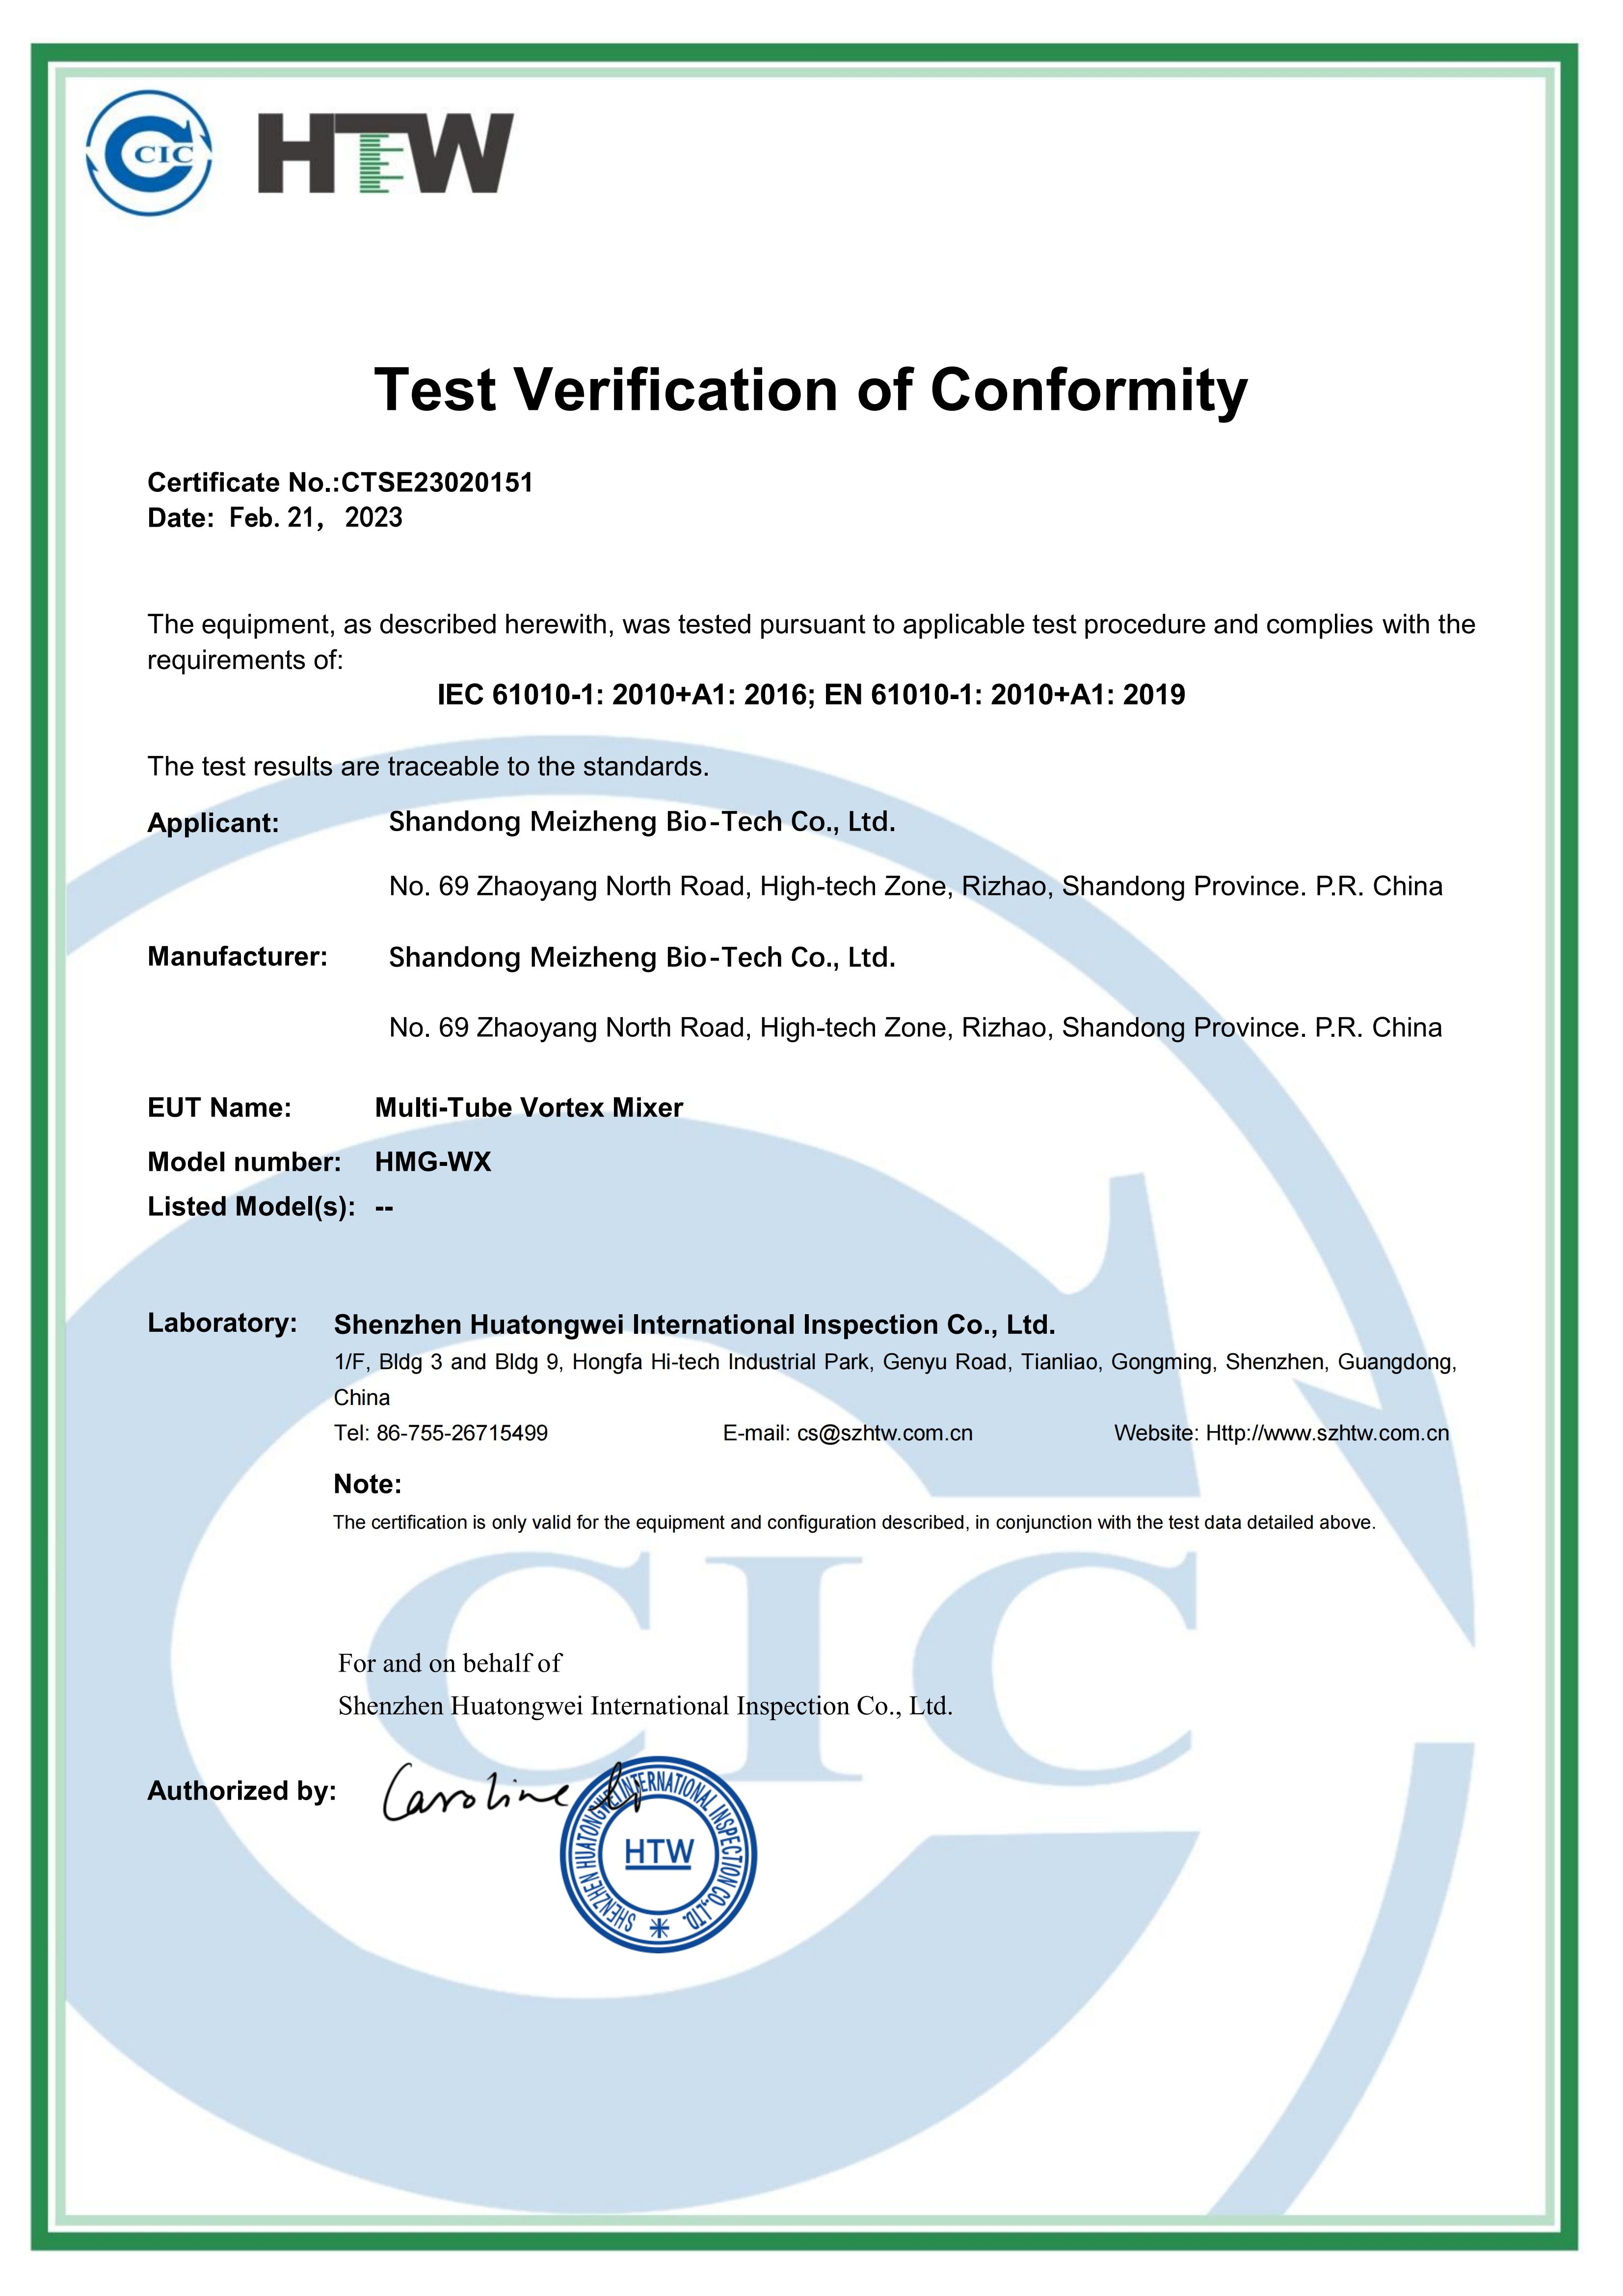 Meizheng Multi-Tube Vortex Mixer has obtained the Conformité Européene (CE) Certificate